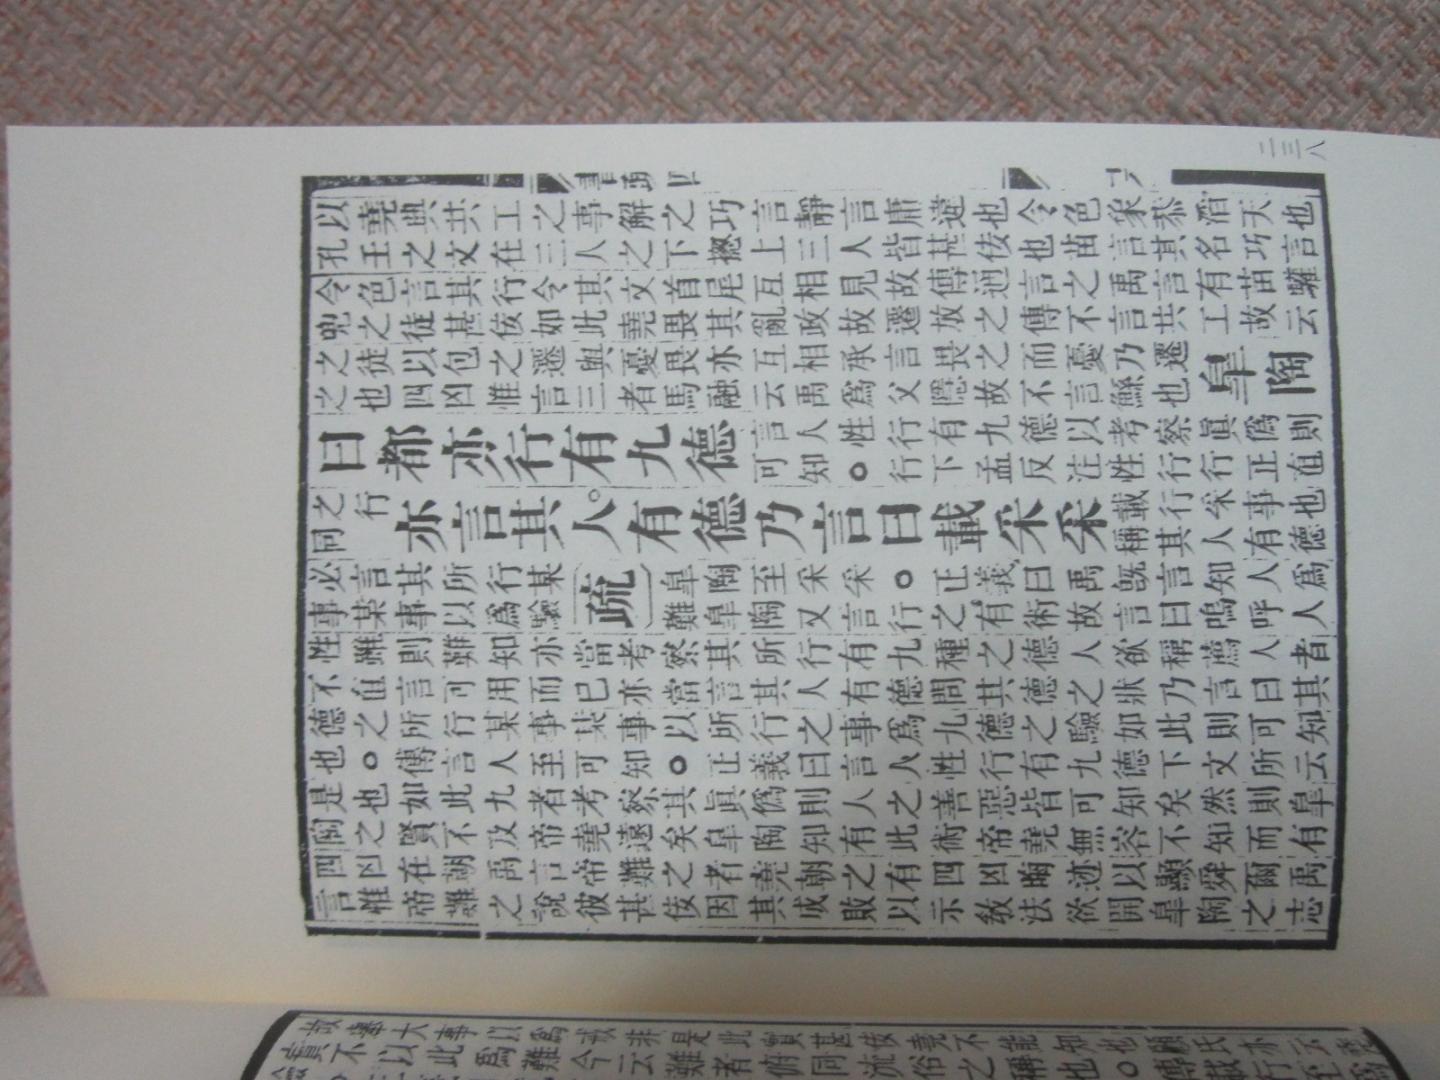 《十三经注疏》是中国古文献的基础典籍，《周易》《尚书》《毛诗》《礼记》《左传》等五经注疏是其核心组成部分。在五经注疏的各种版本中，清阮元刻本体例较为完备，影响亦较为深远（至今仍为学界通行本）。